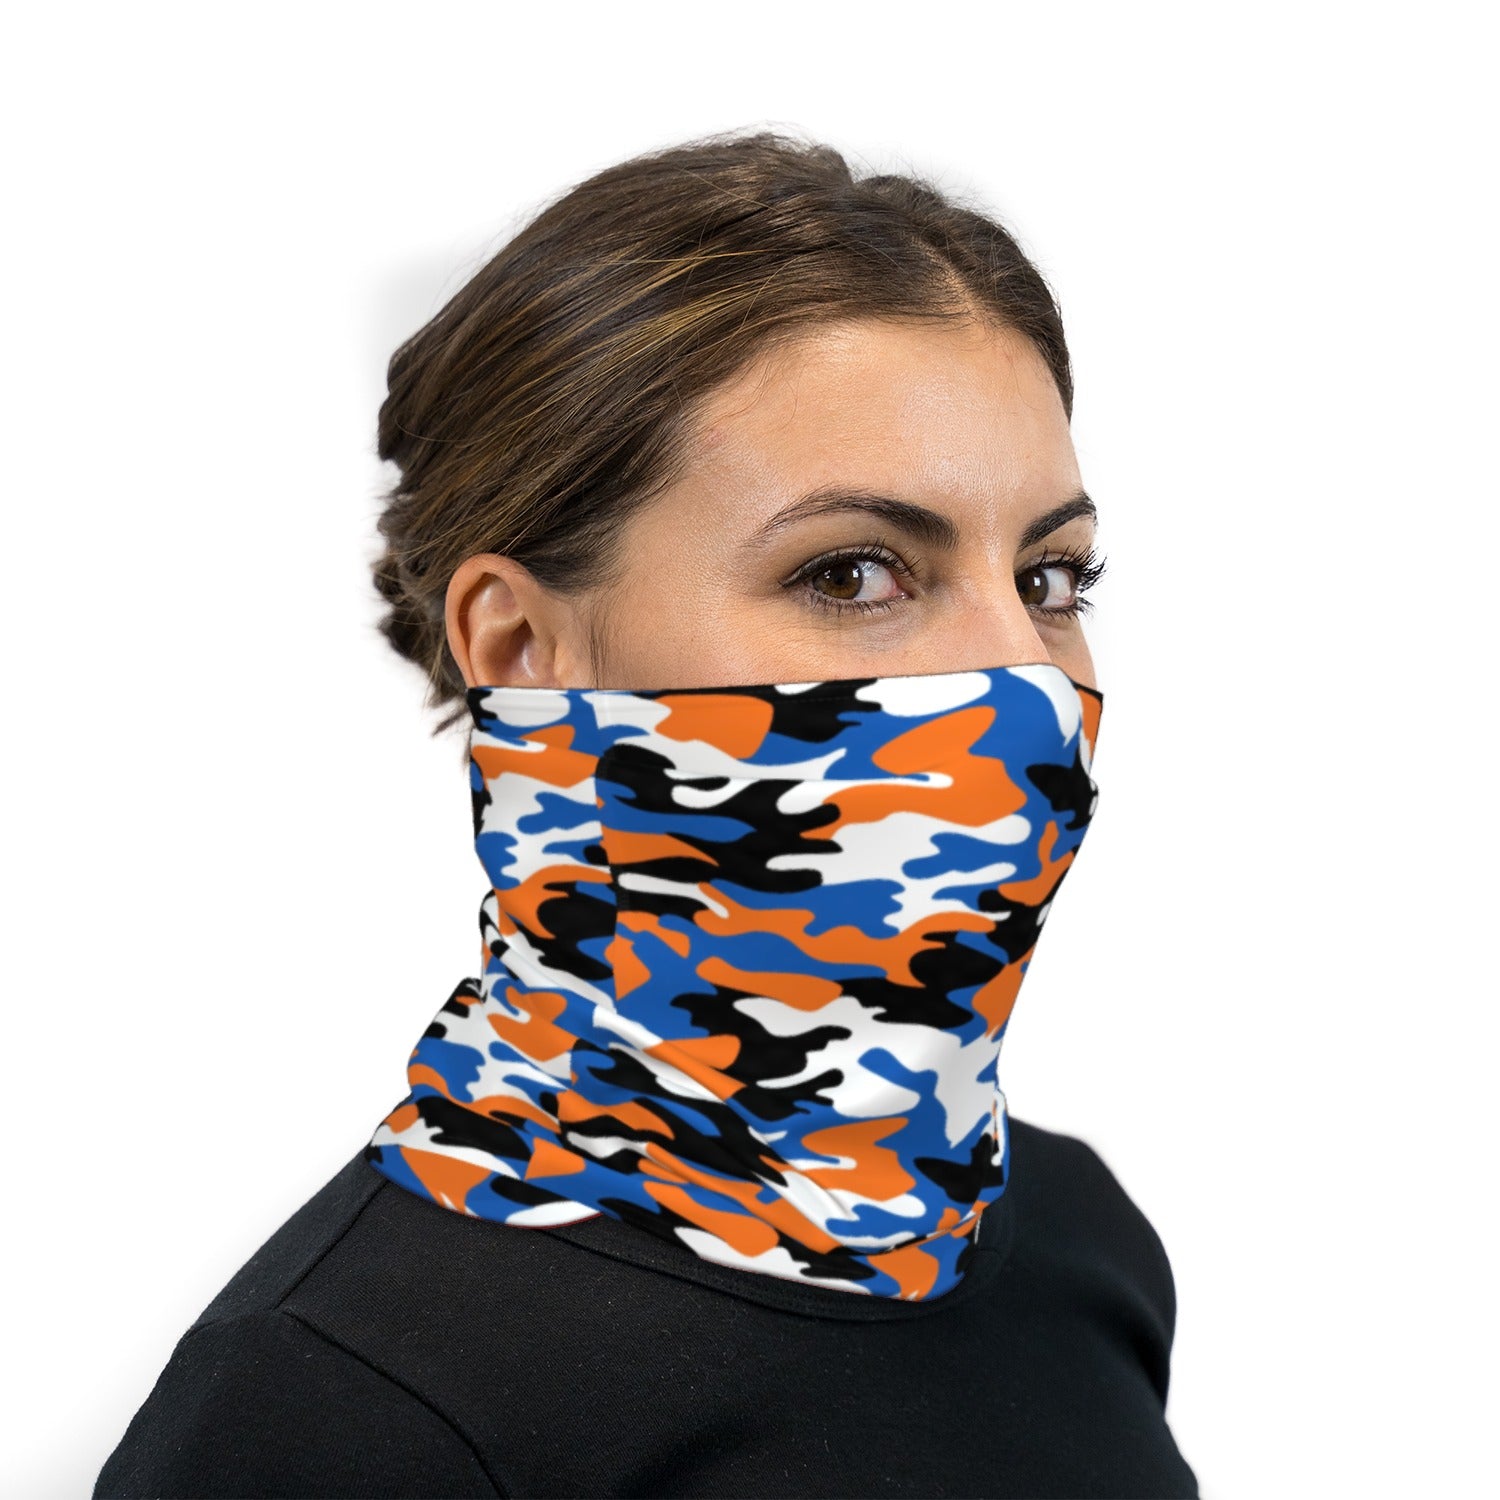 Blue and Orange Camouflage Neck Gaiter Face Mask